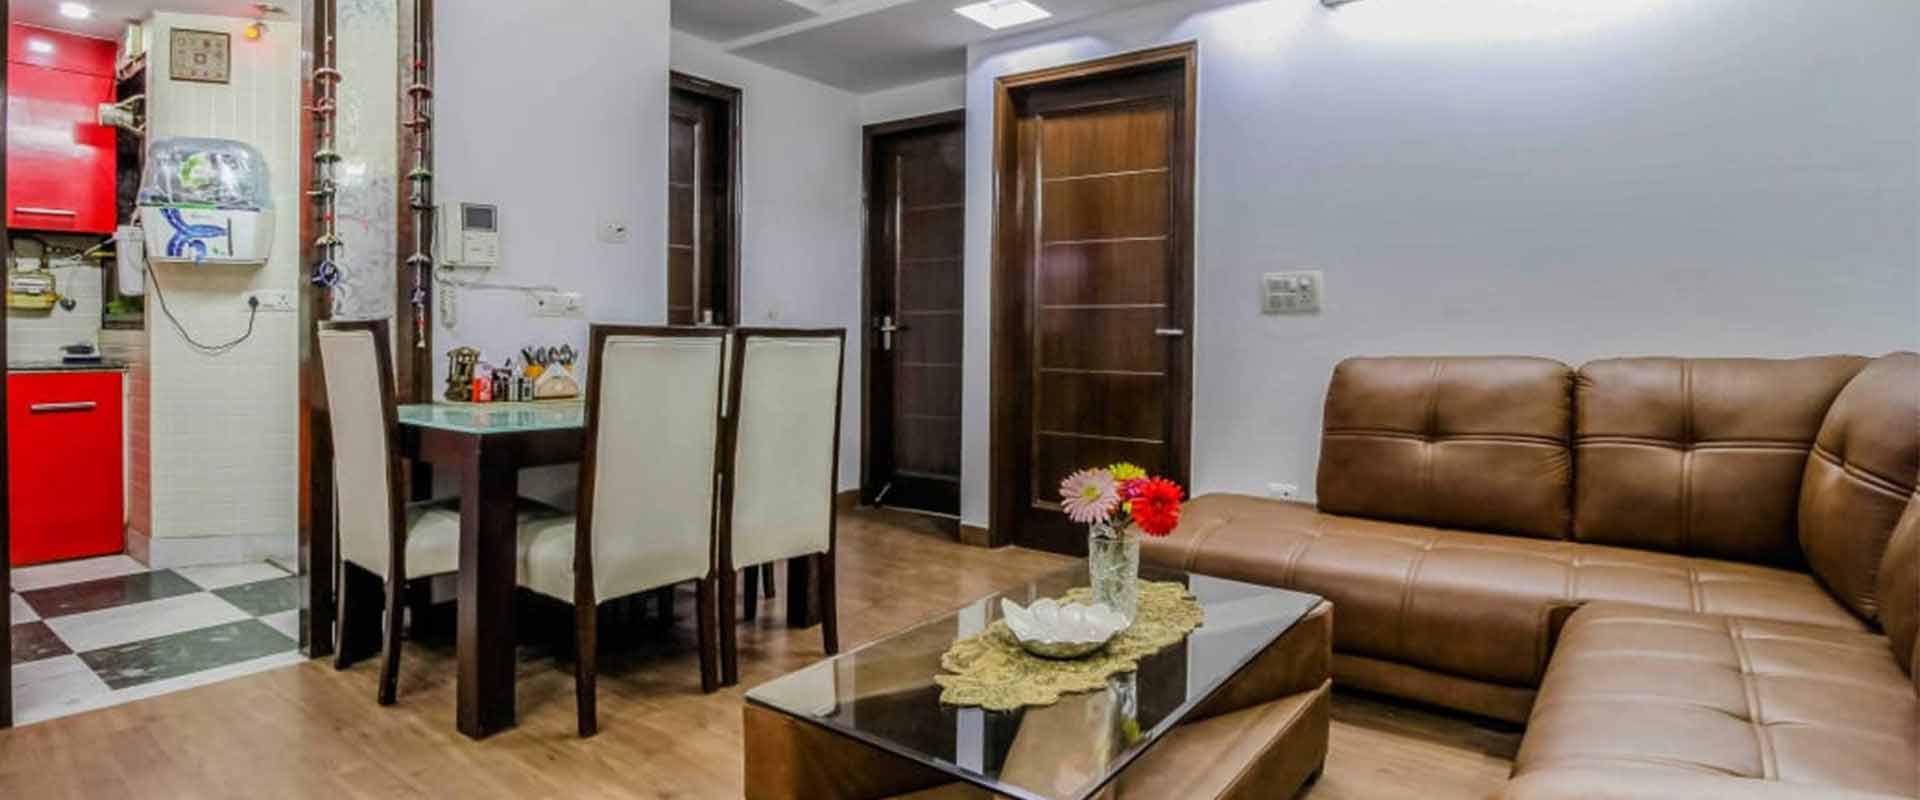 Room for rent in Delhi for family